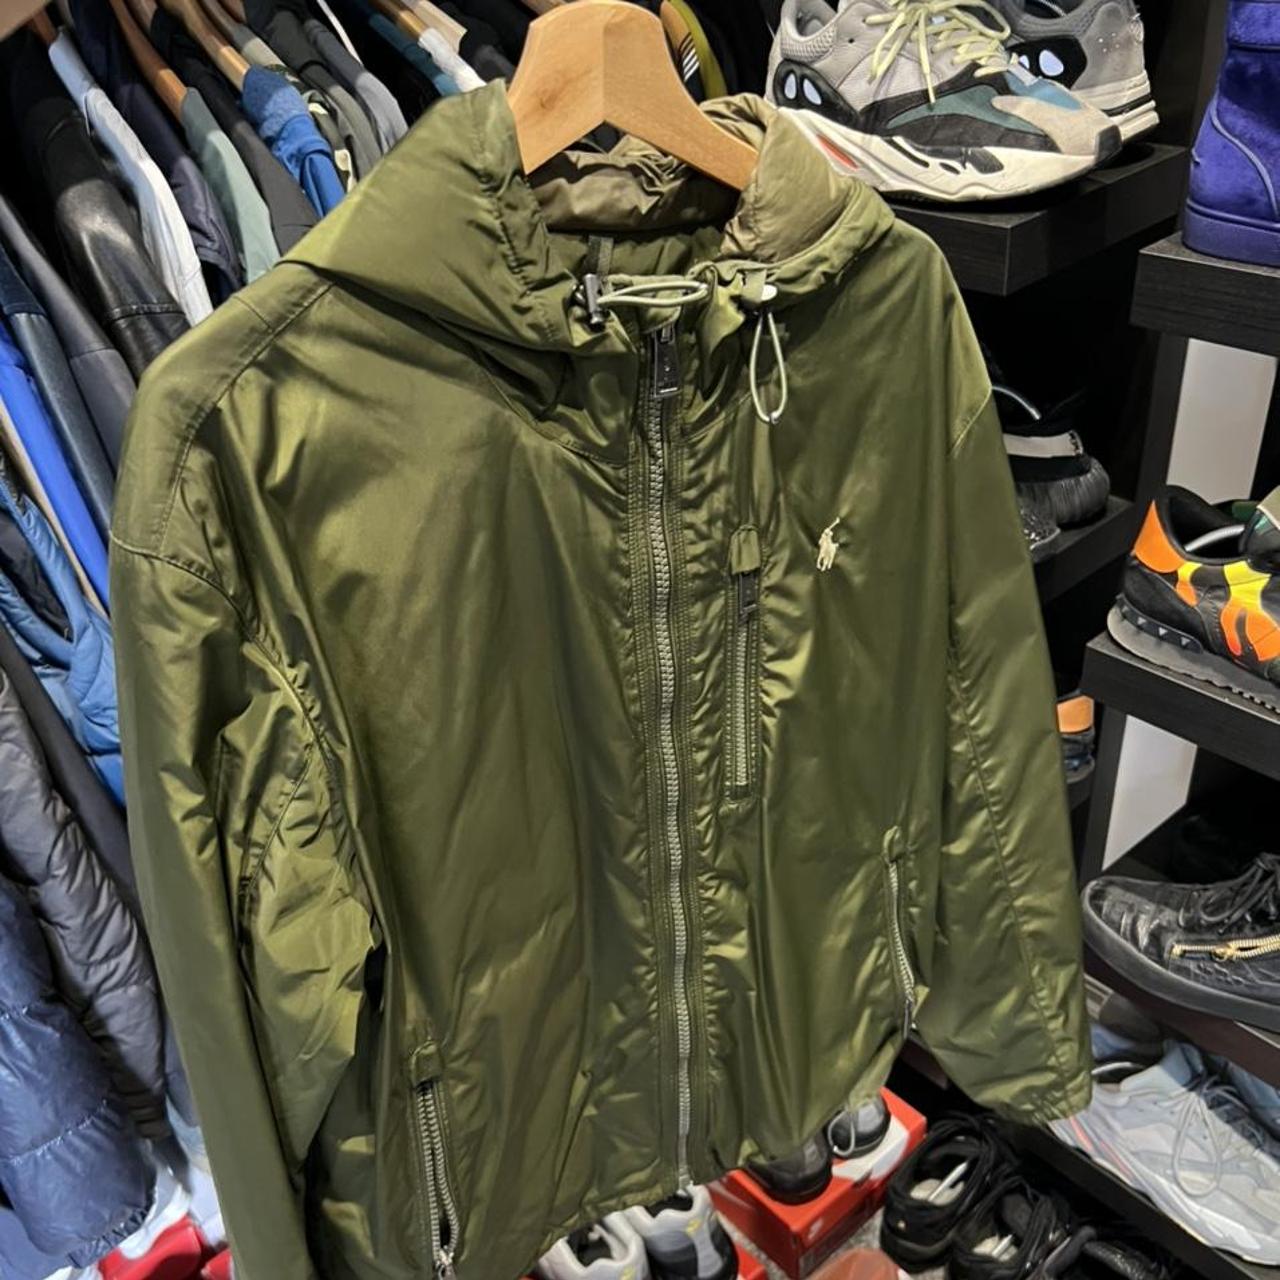 Polo Ralph Lauren jacket Mens Colour - khaki... - Depop